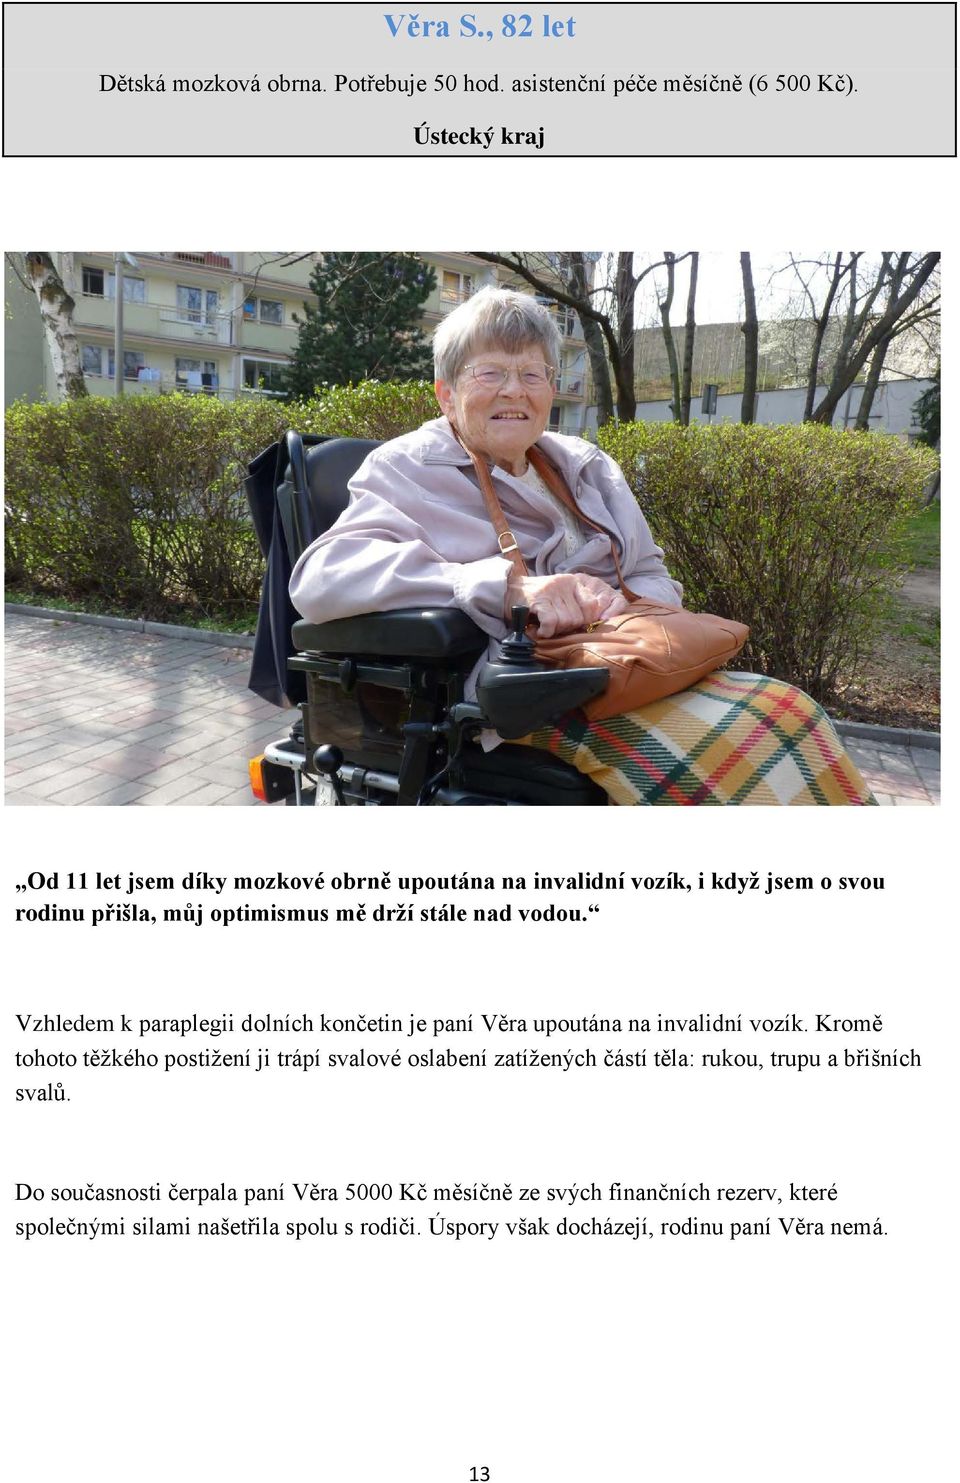 Vzhledem k paraplegii dolních končetin je paní Věra upoutána na invalidní vozík.